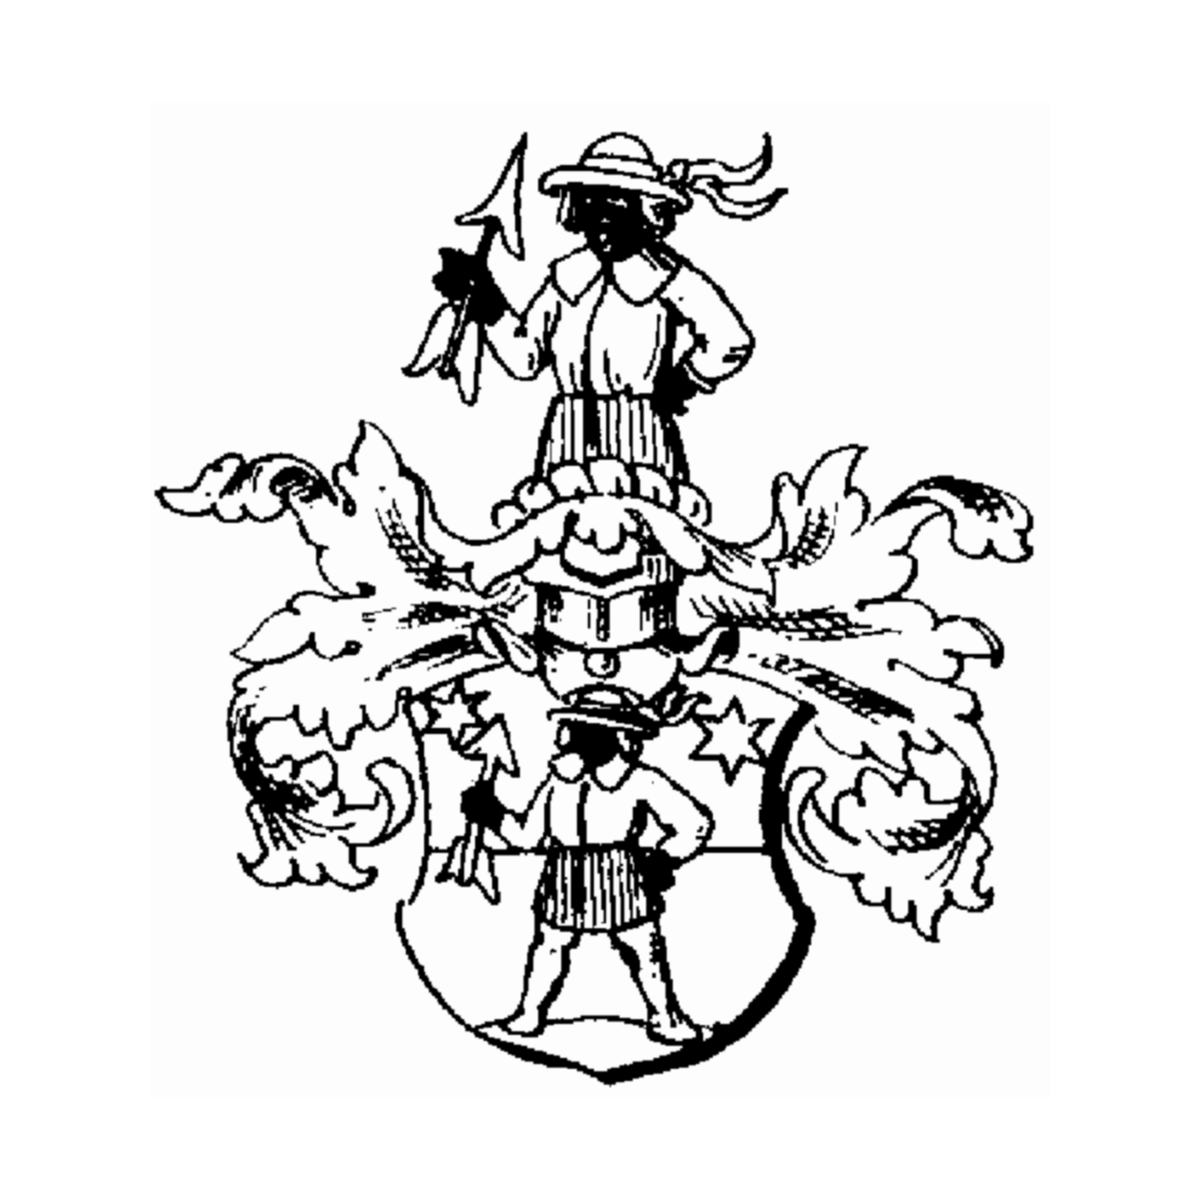 Wappen der Familie Leiter